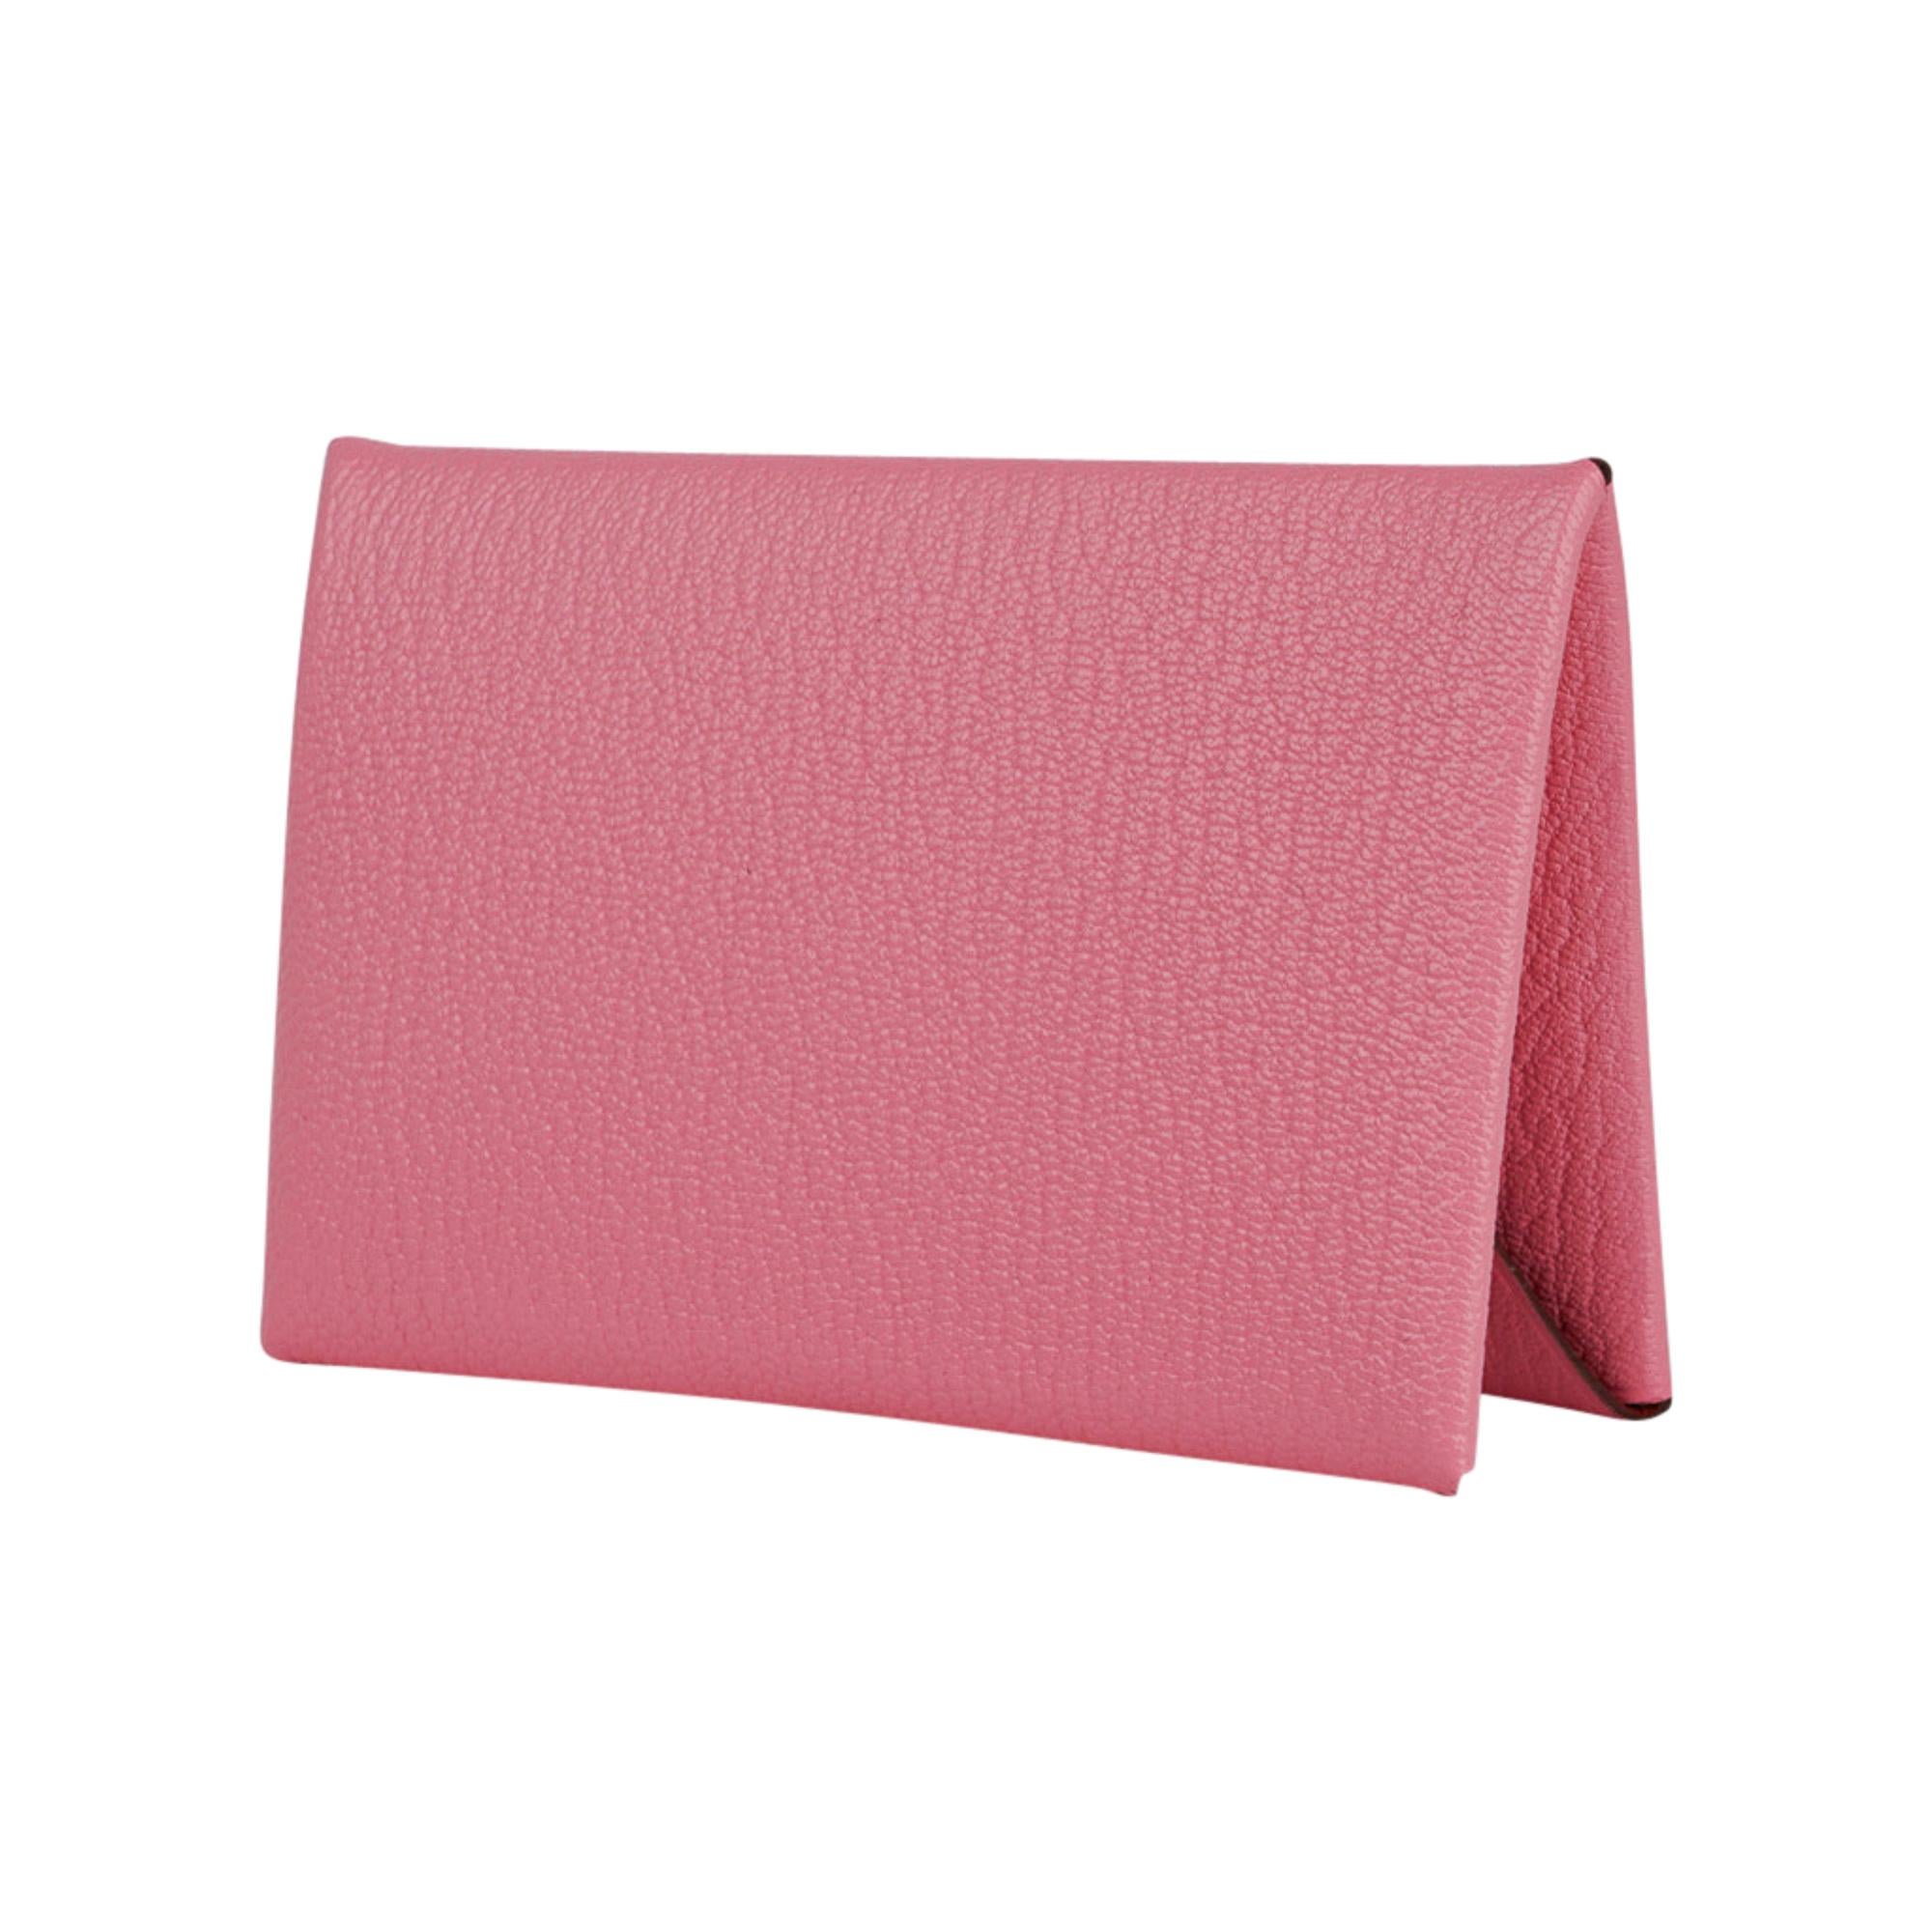 Hermes Calvi Verso Card Holder  Pink Confetti / Brick Chevre Leather New w/Box In New Condition In Miami, FL